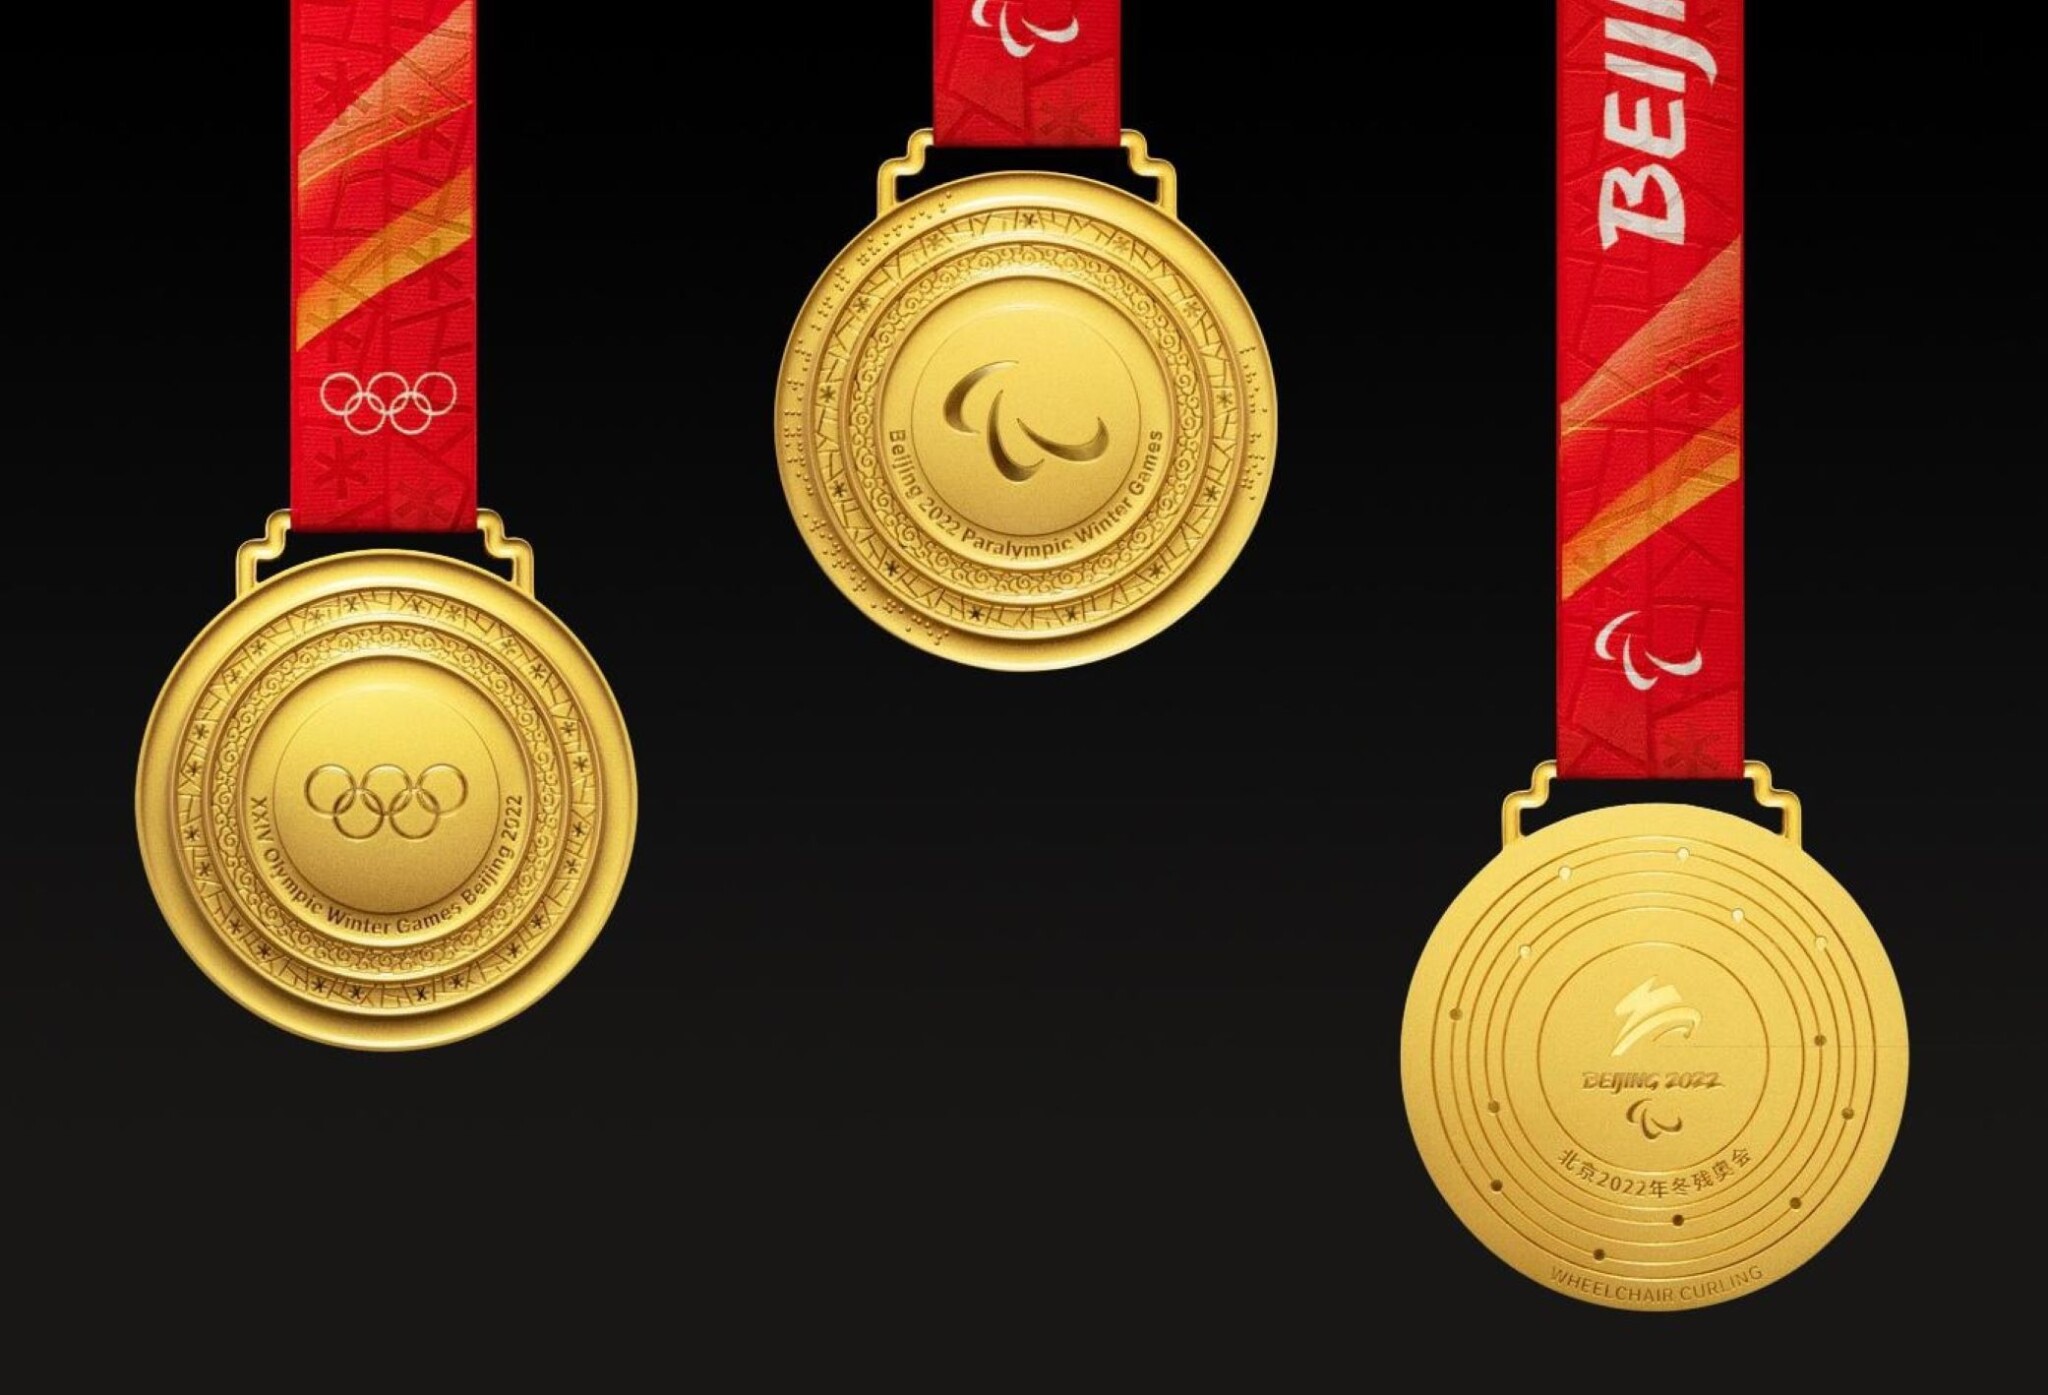 Tučné odměny pro olympioniky. Mezi nejštědřejšími zeměmi je i Česká republika